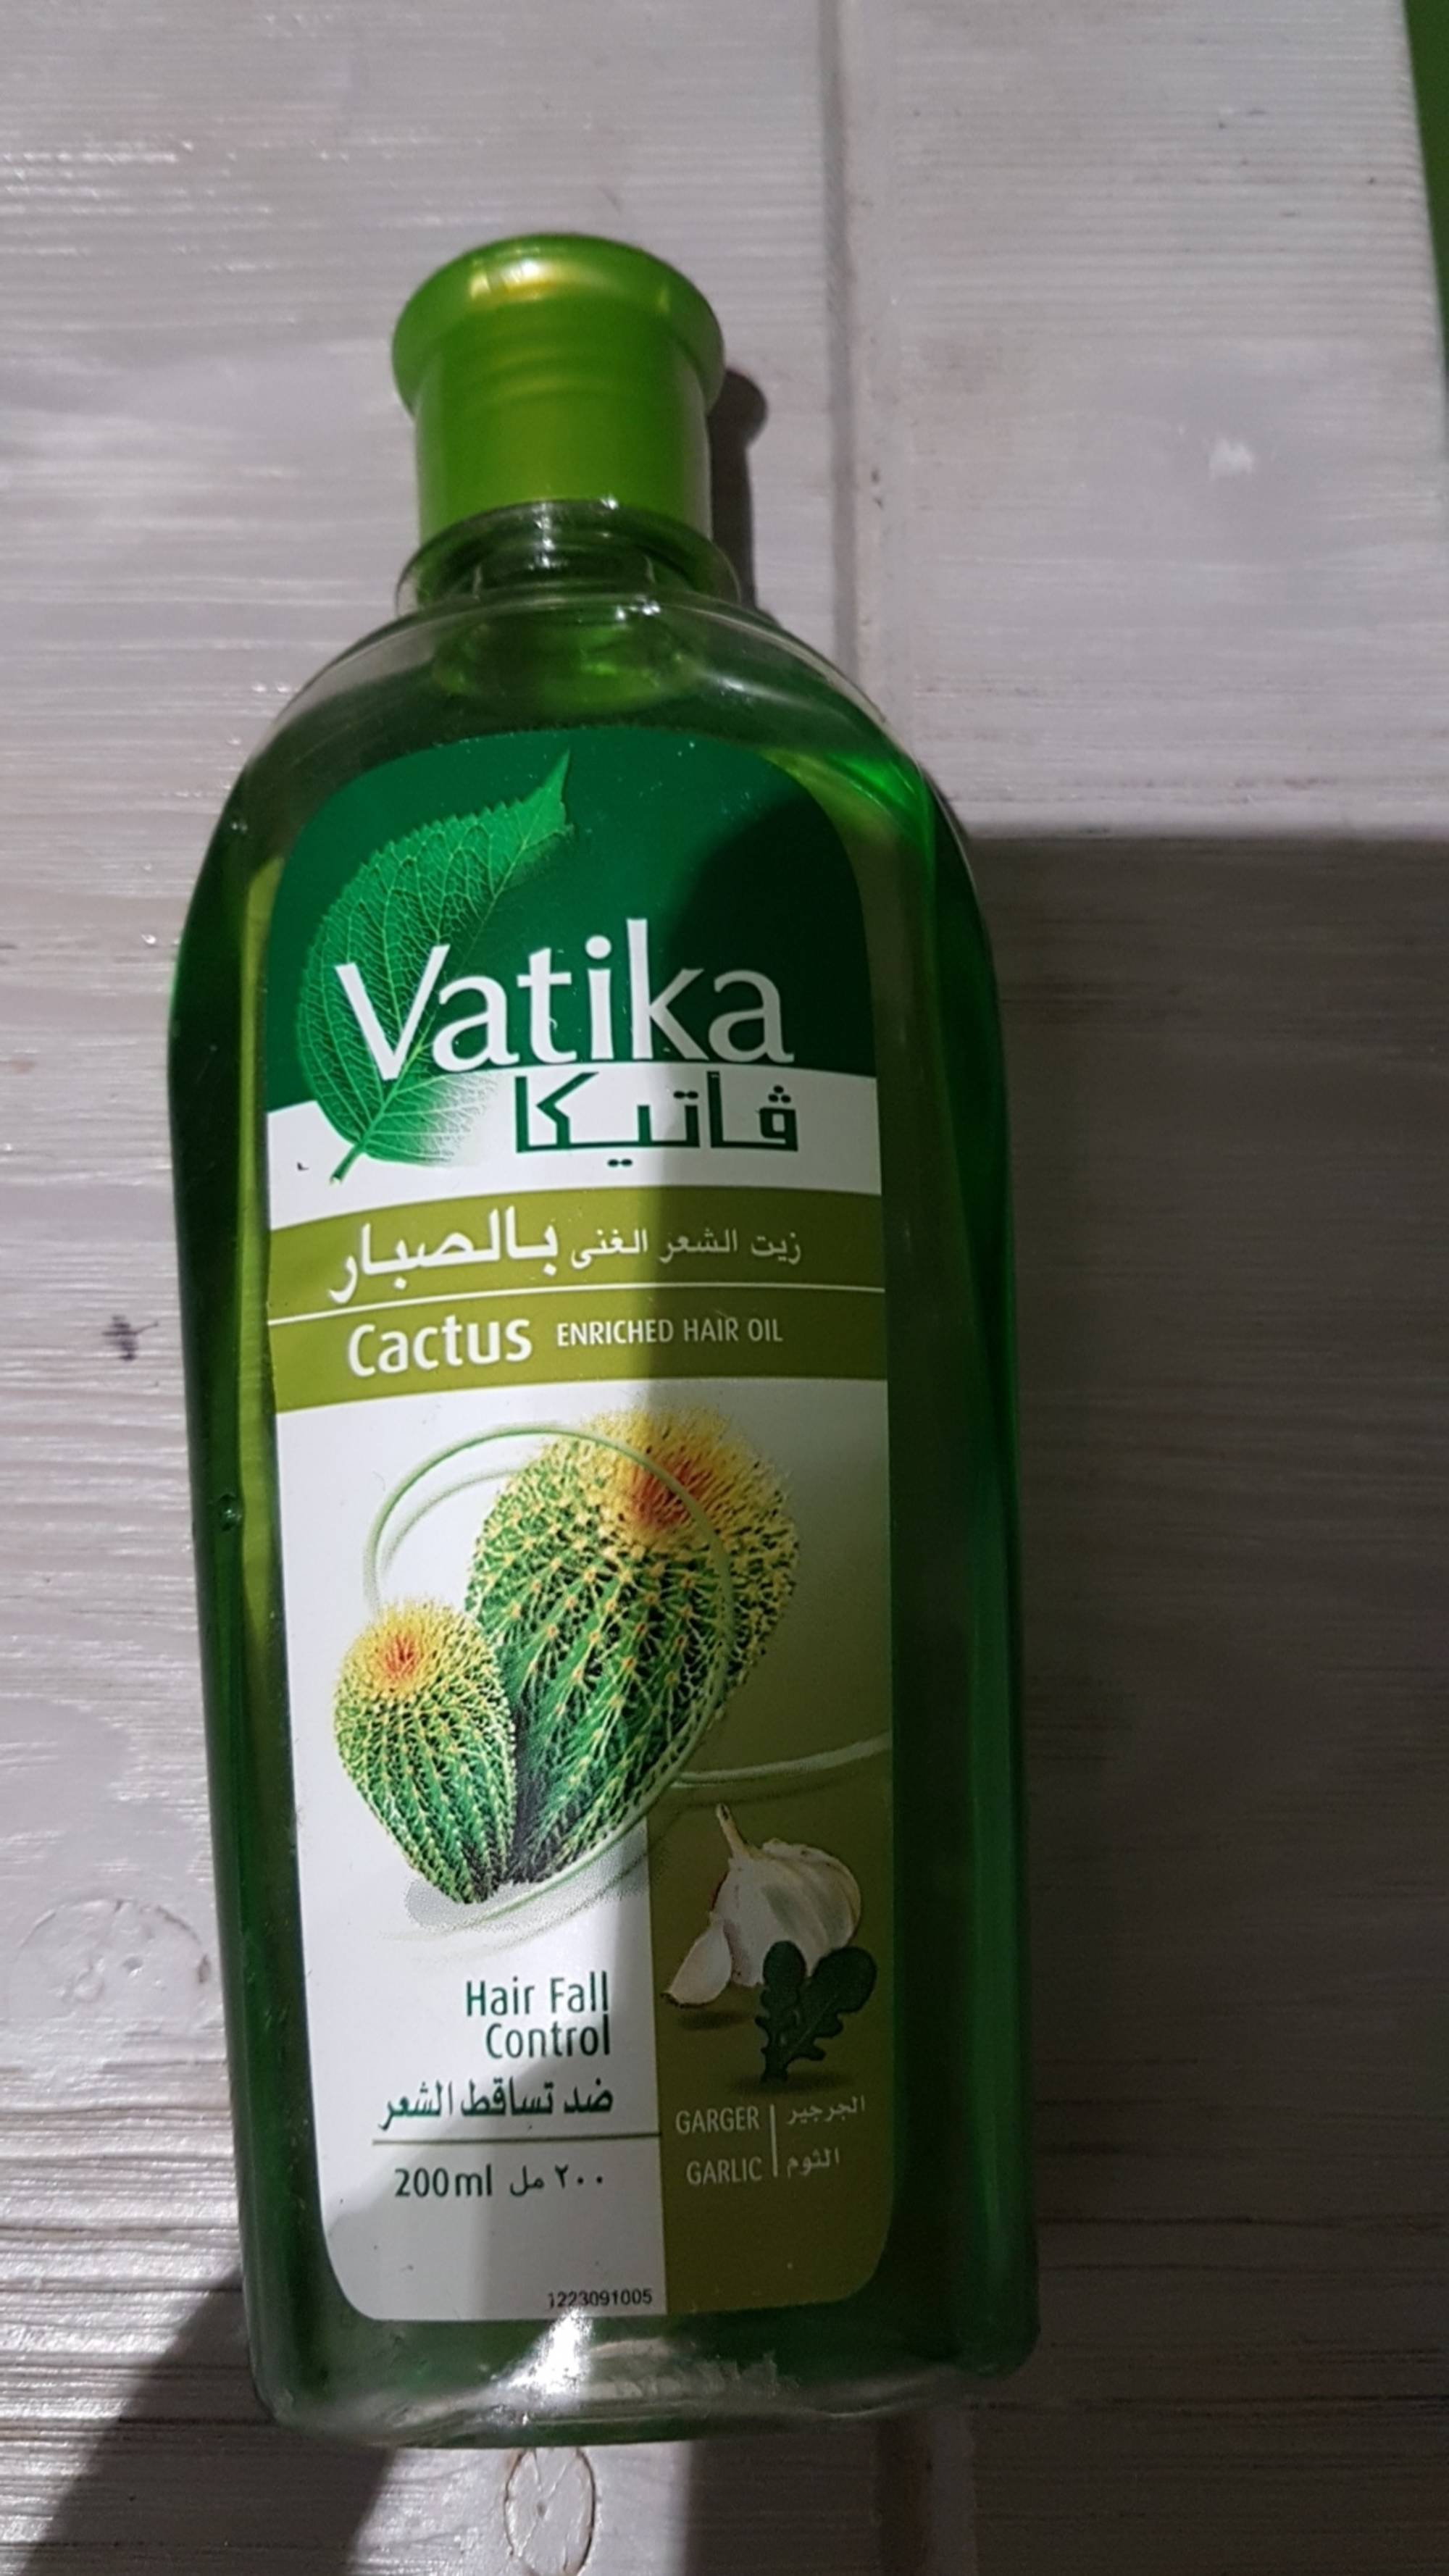 VATIKA - Cactus Enriched hair oil